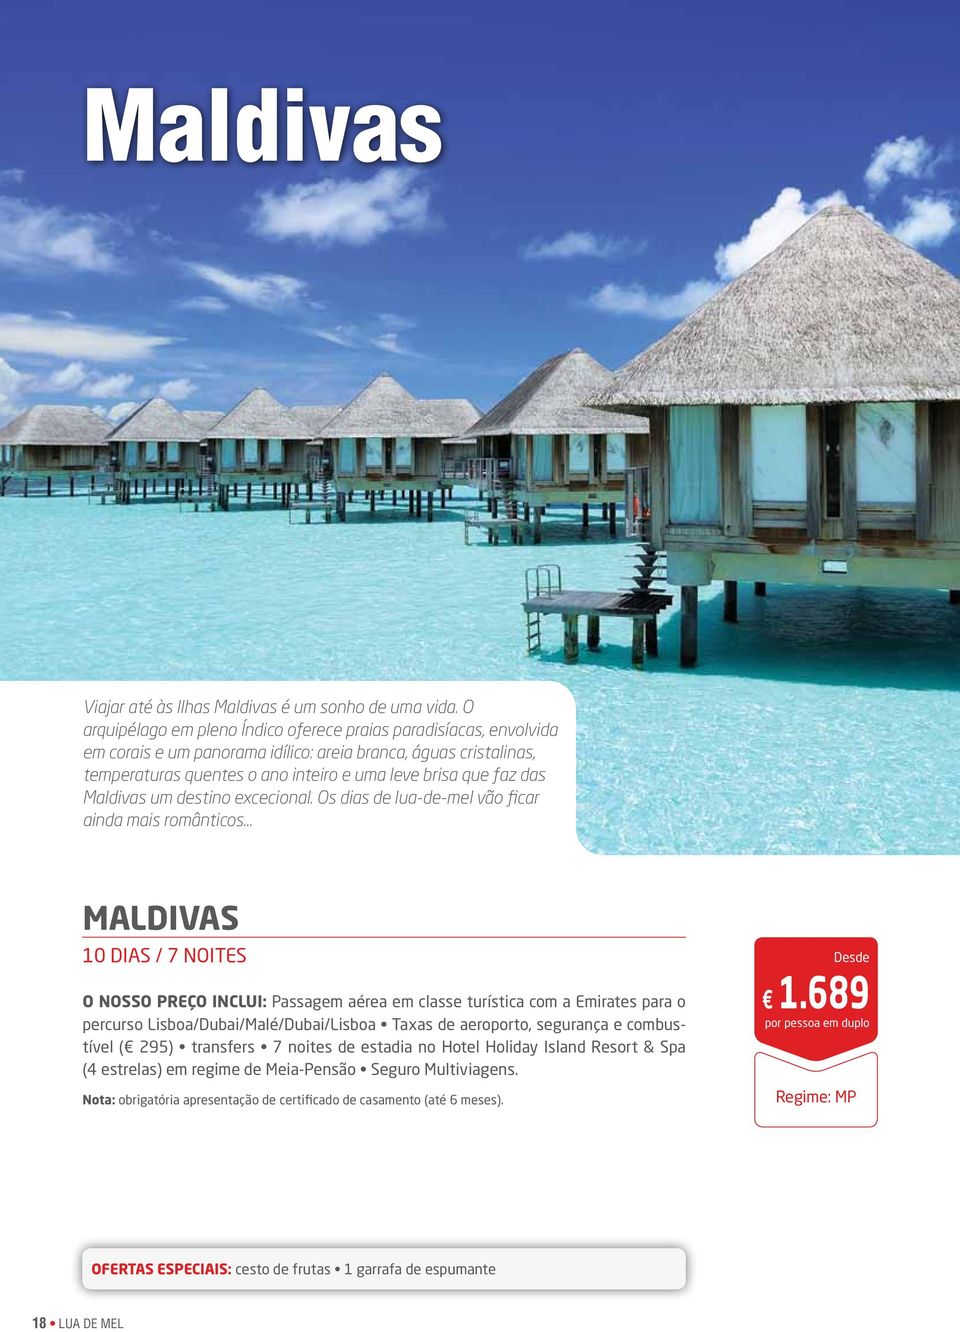 Maldivas um destino excecional.